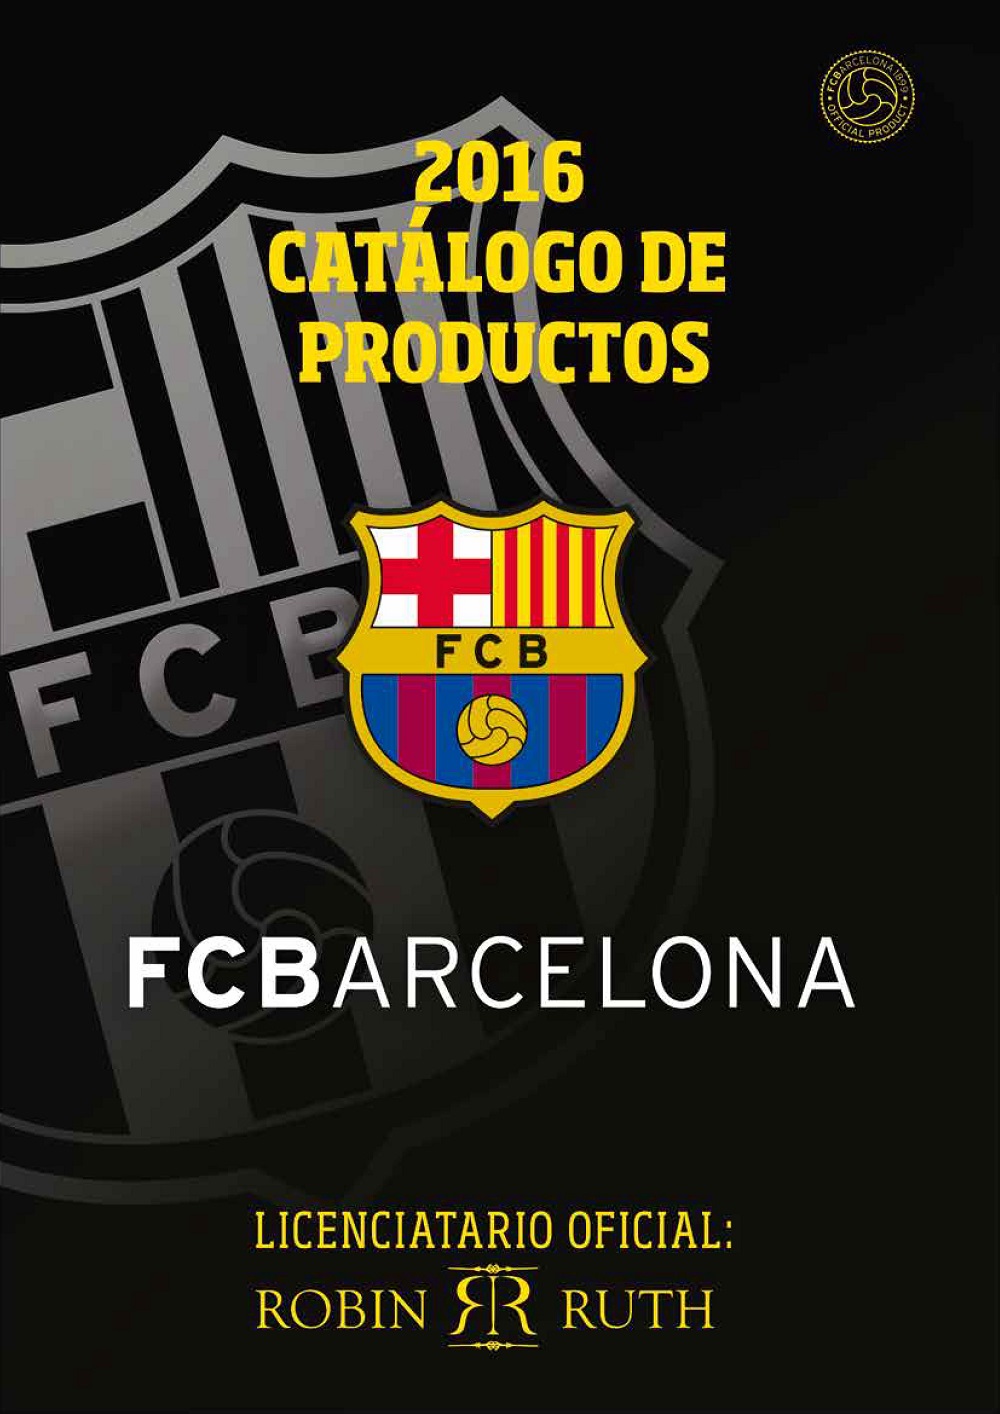 robin ruth fc barcelona logo